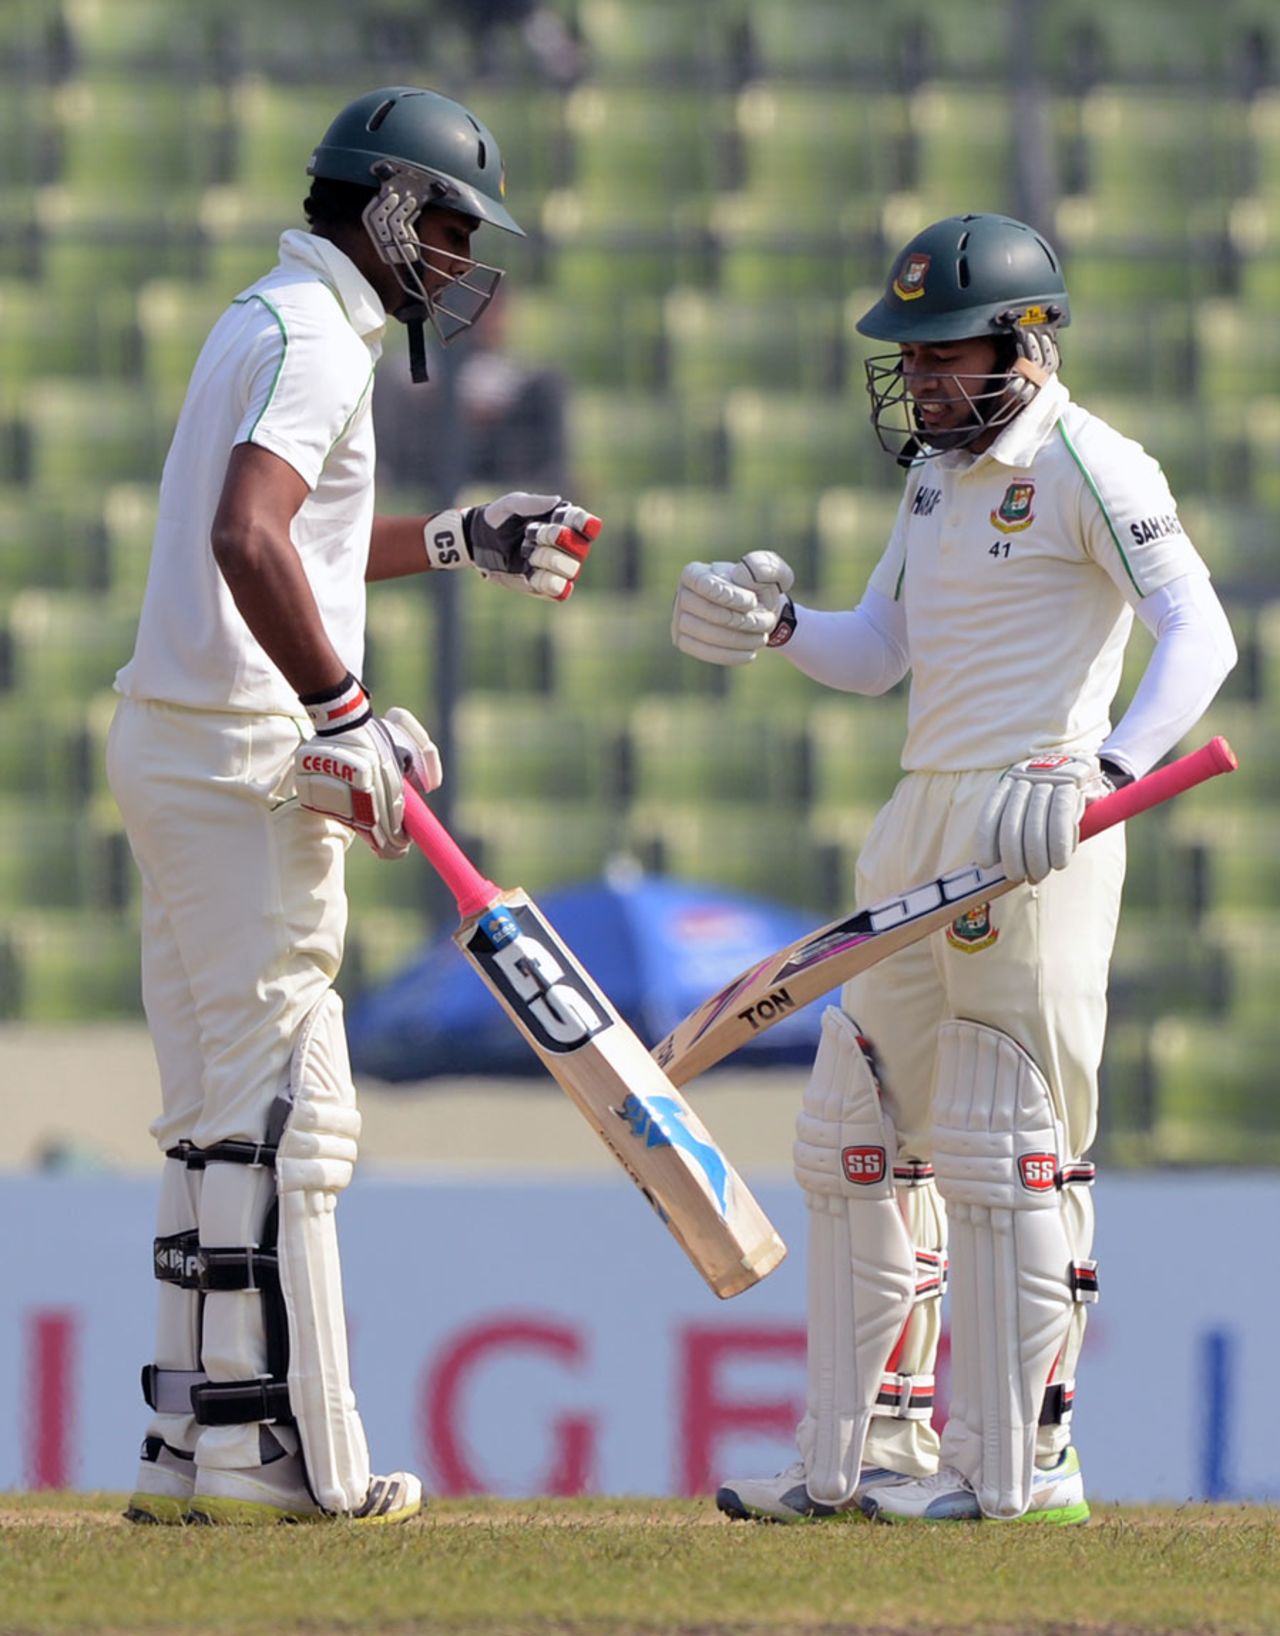 Mushfiqur Rahim and Sohag Gazi punch gloves, Bangladesh v Sri Lanka, 1st Test, Mirpur, 1st day, January 27, 2014